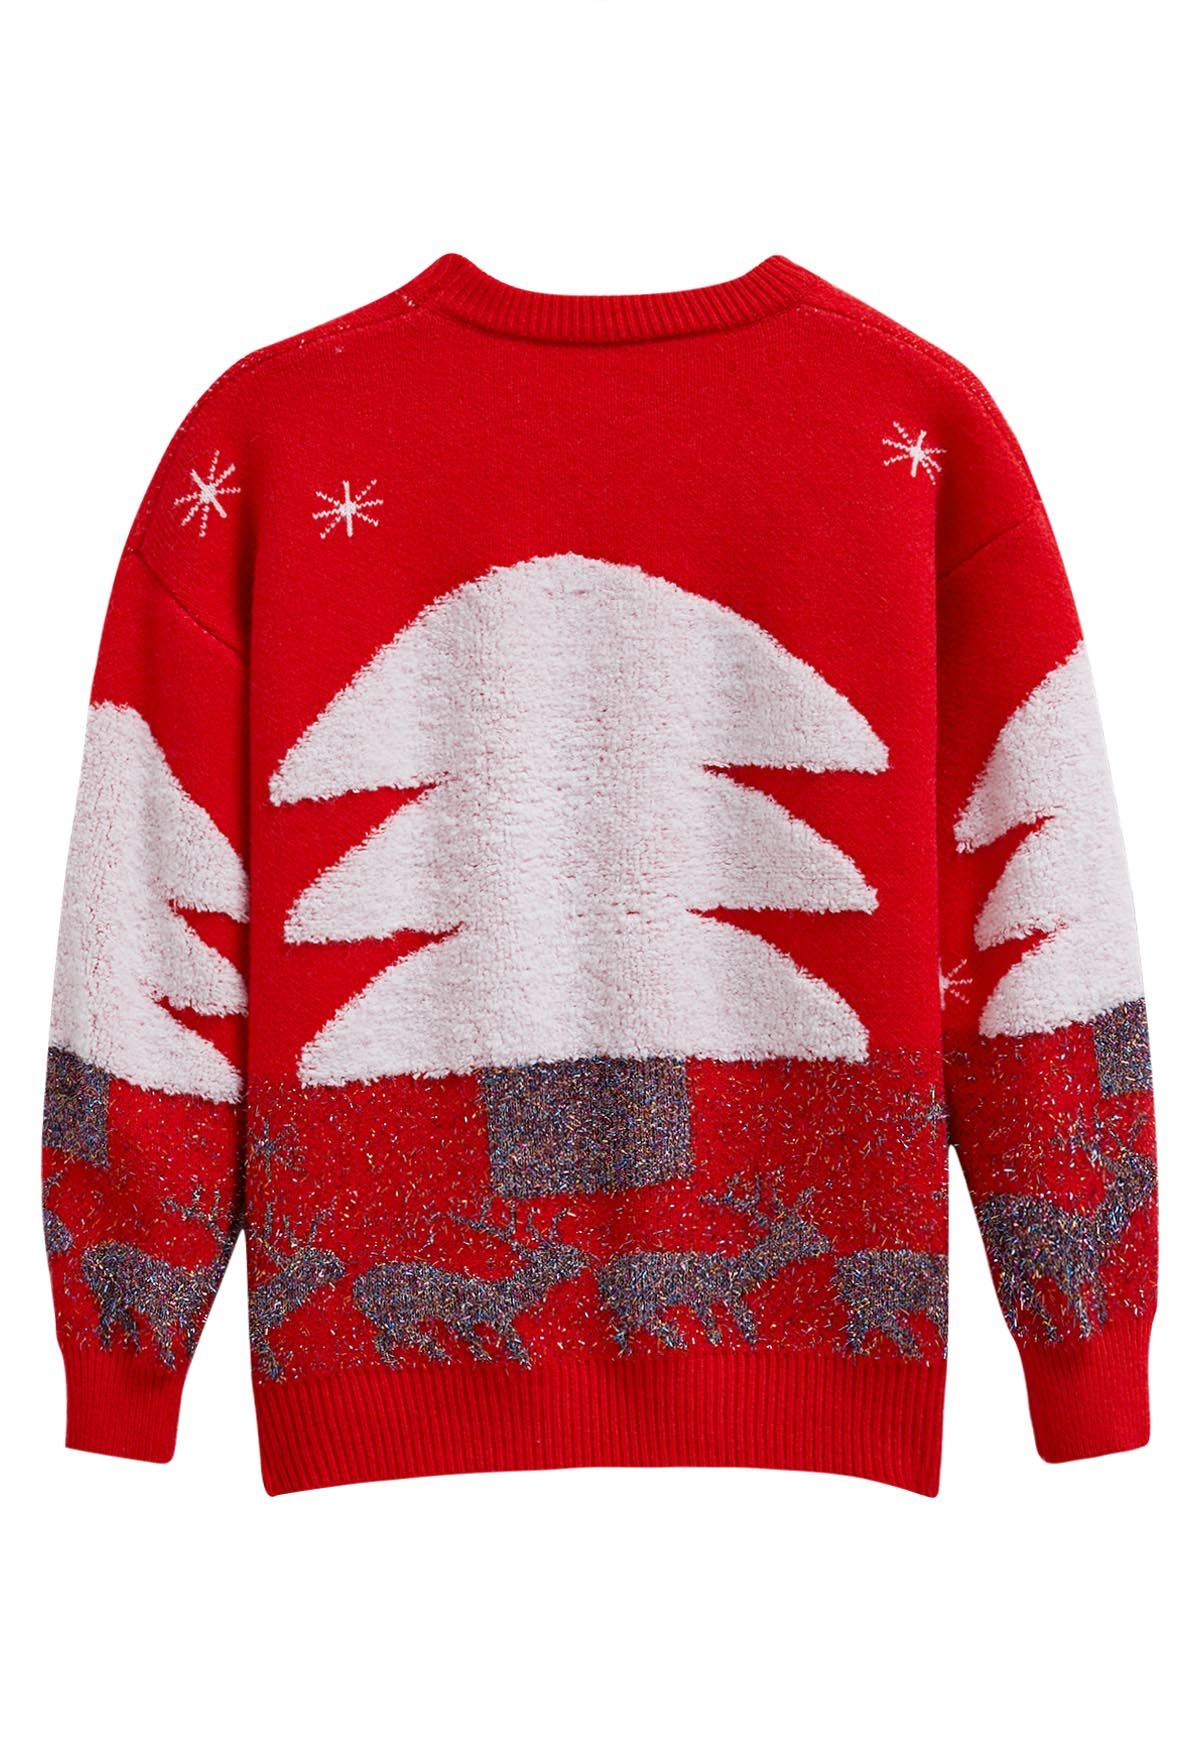 Suéter de punto jacquard con alce y árbol de Navidad alegre en rojo